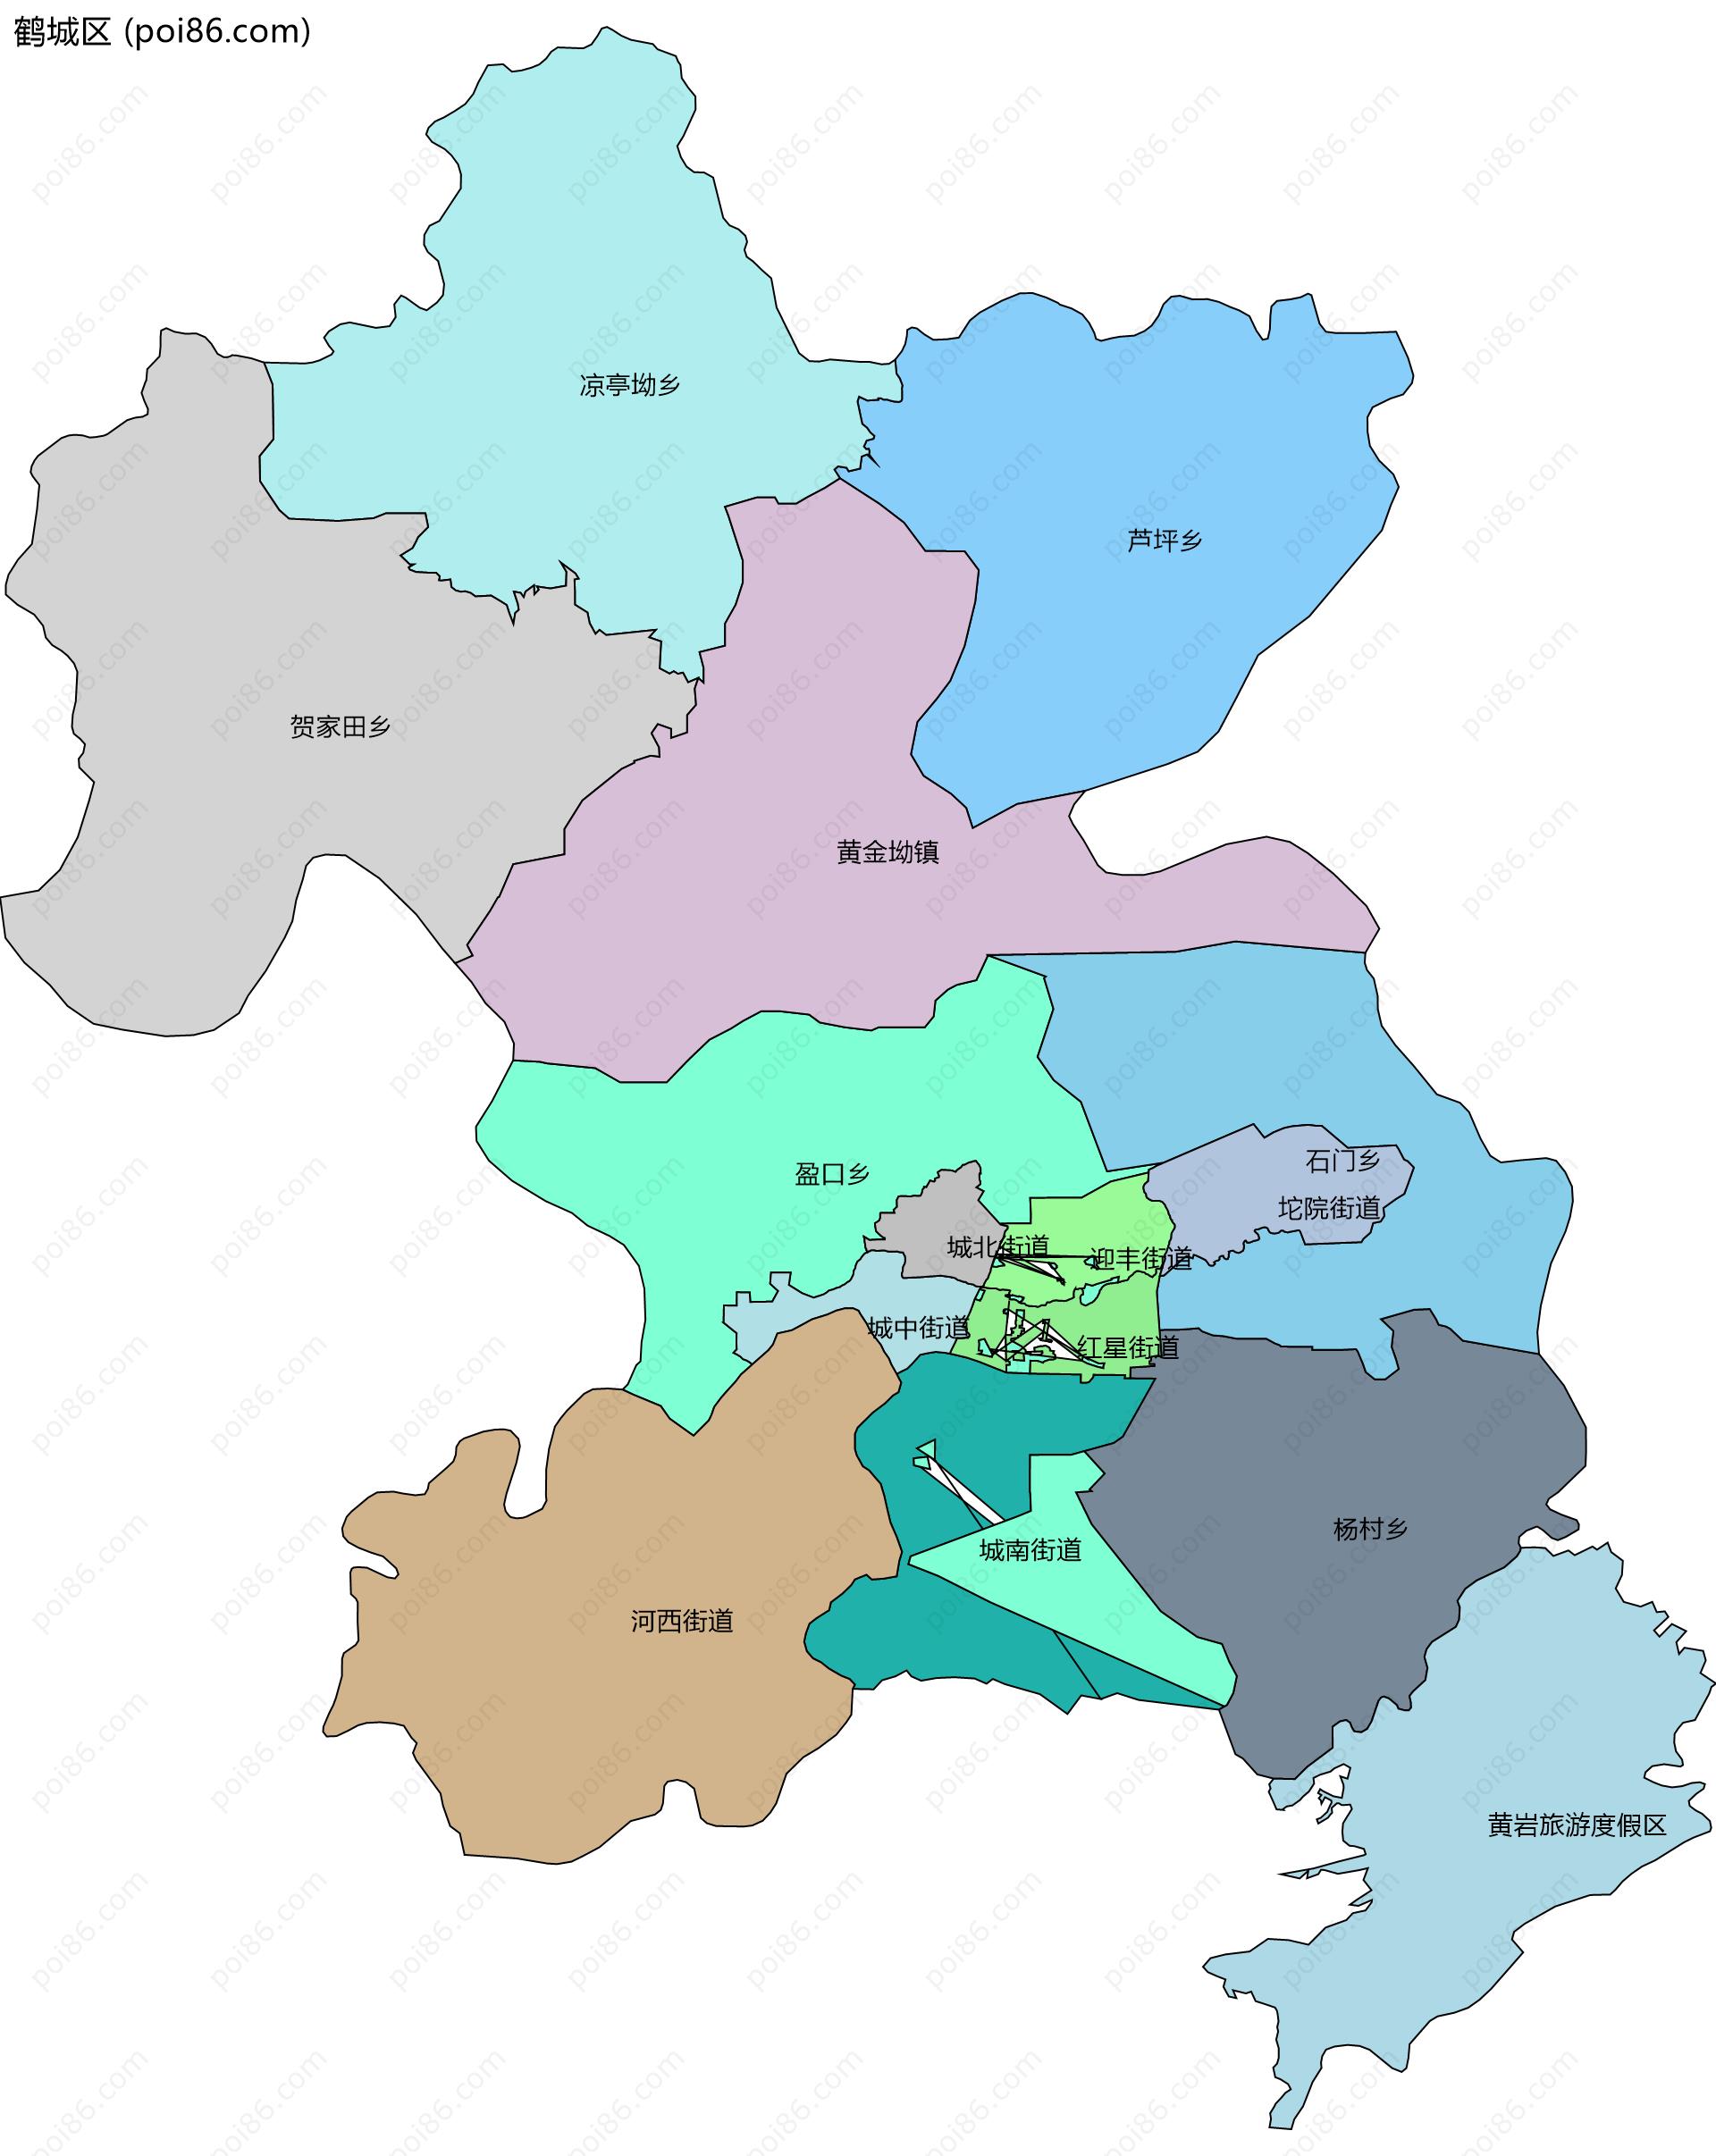 鹤城区边界地图